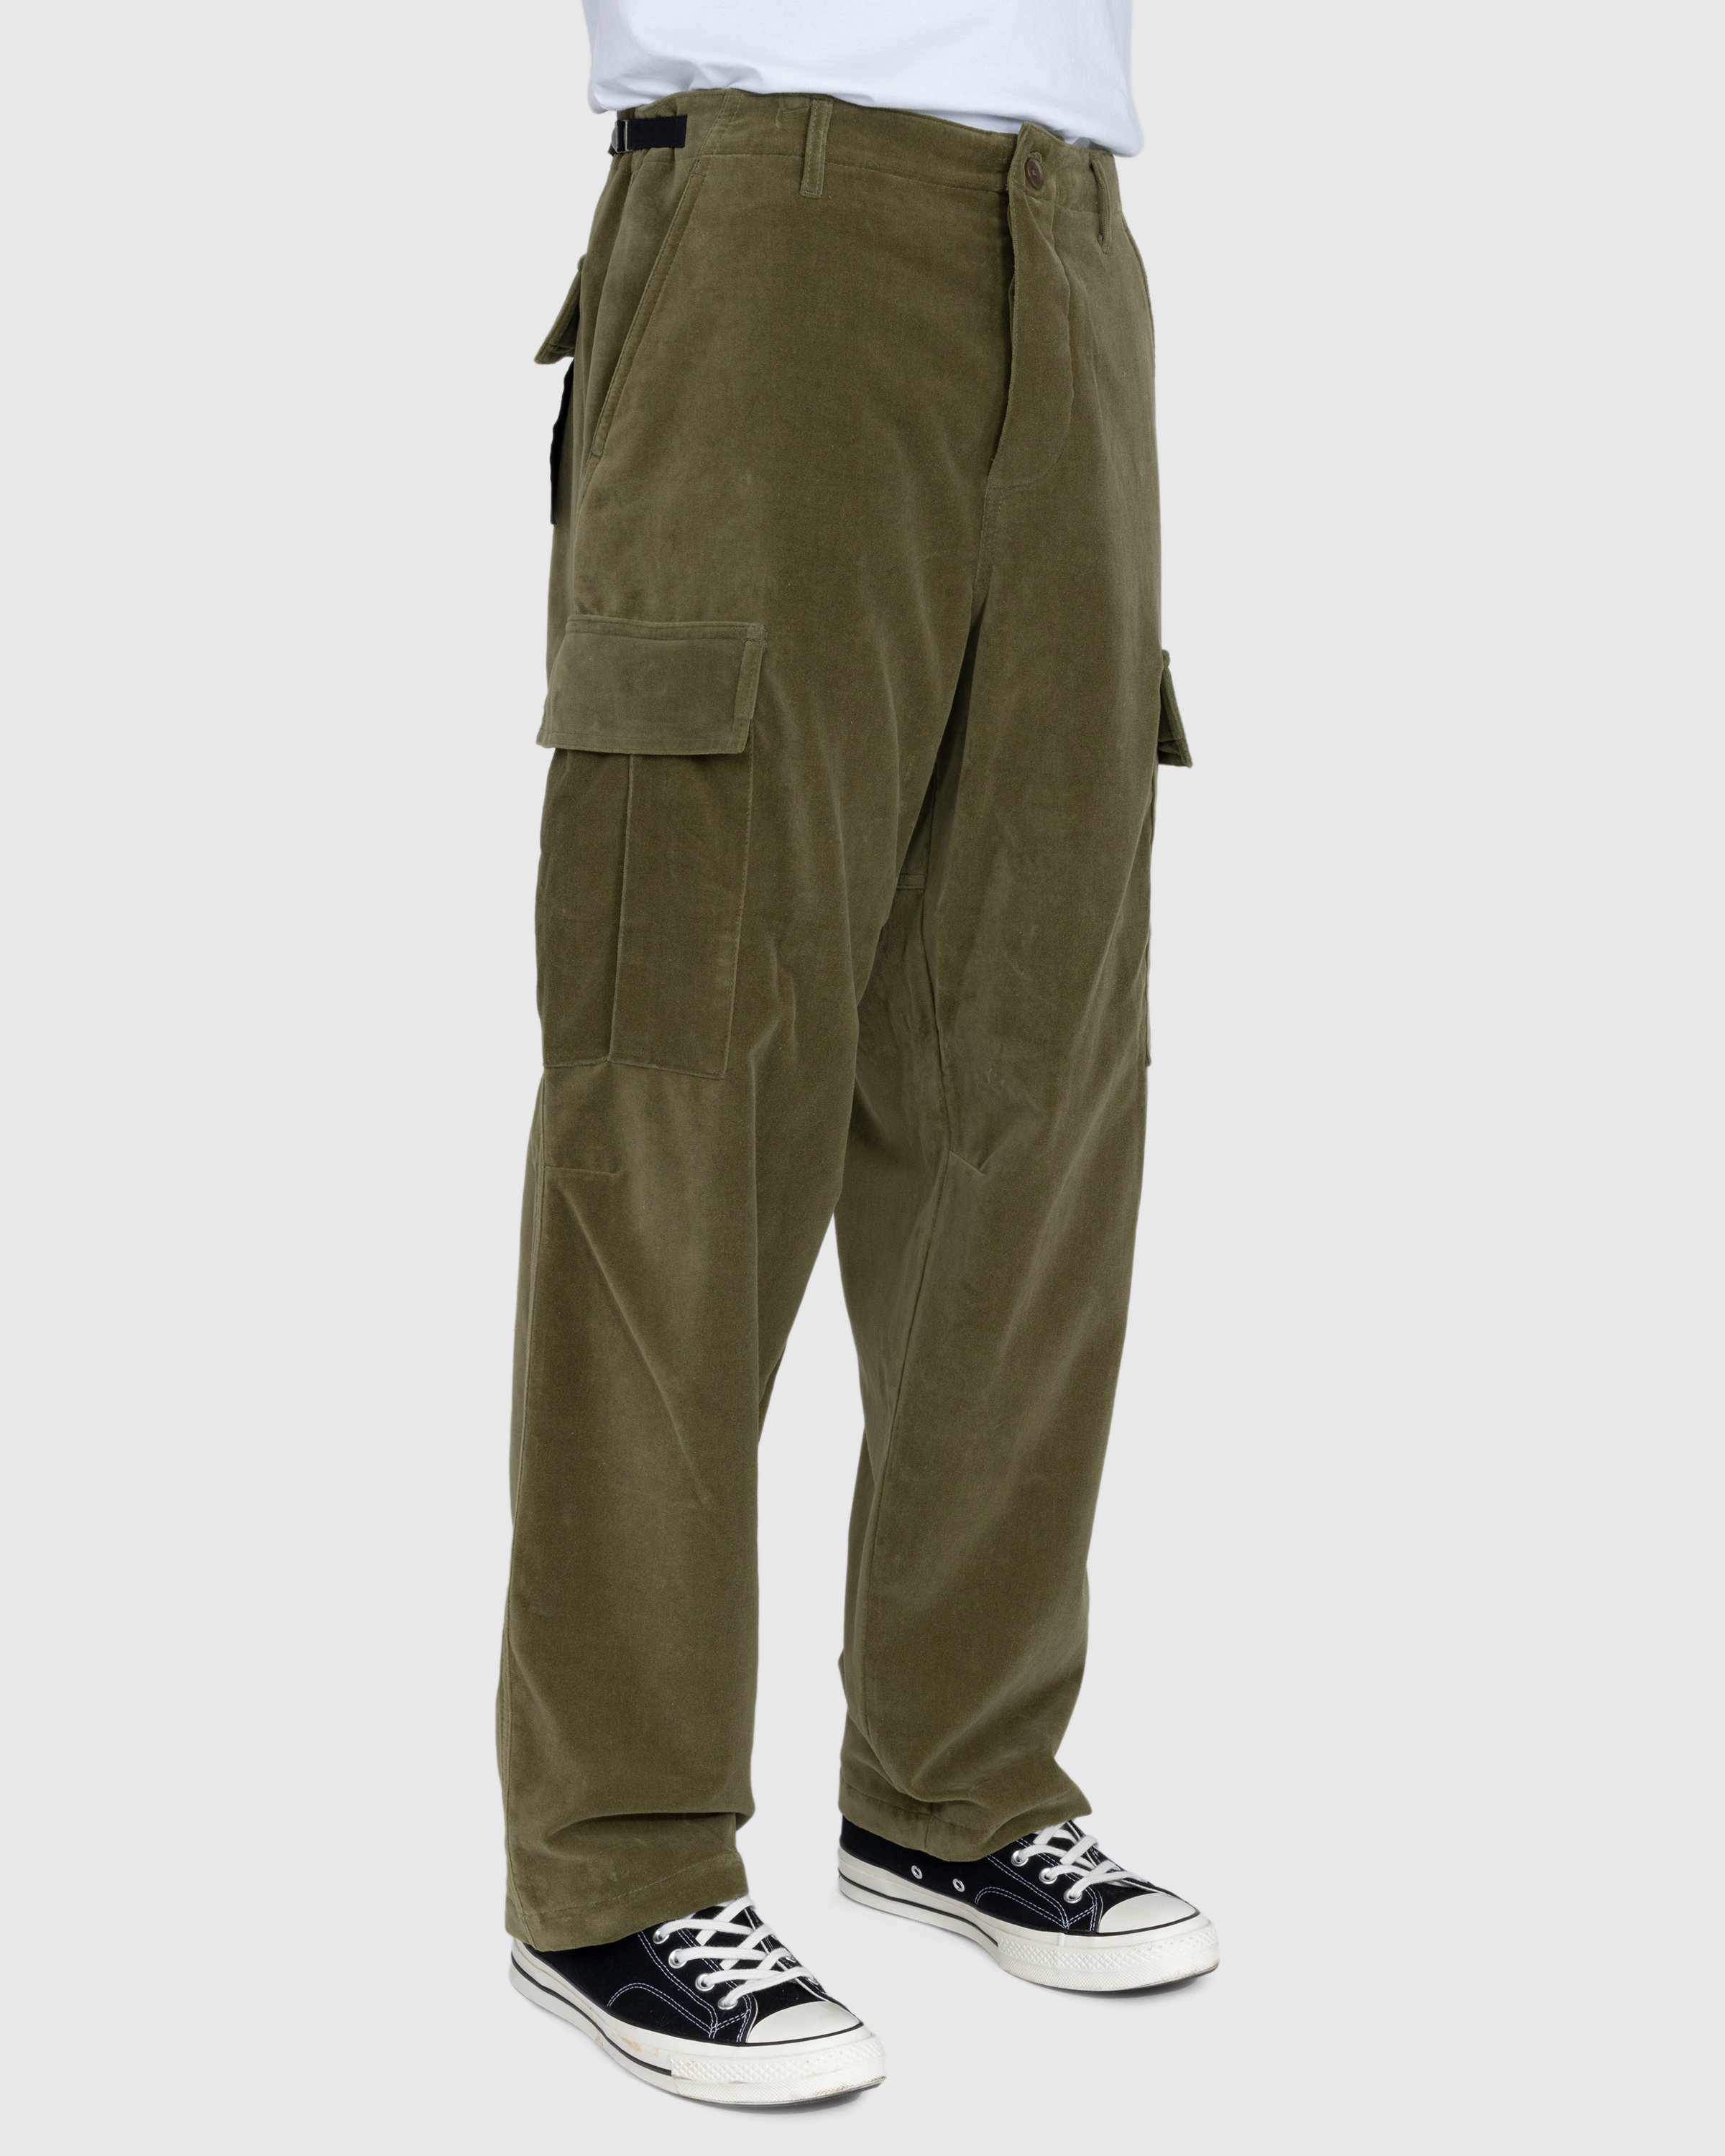 Highsnobiety - Moleskin Cargo Pant Olive - Clothing - Green - Image 3